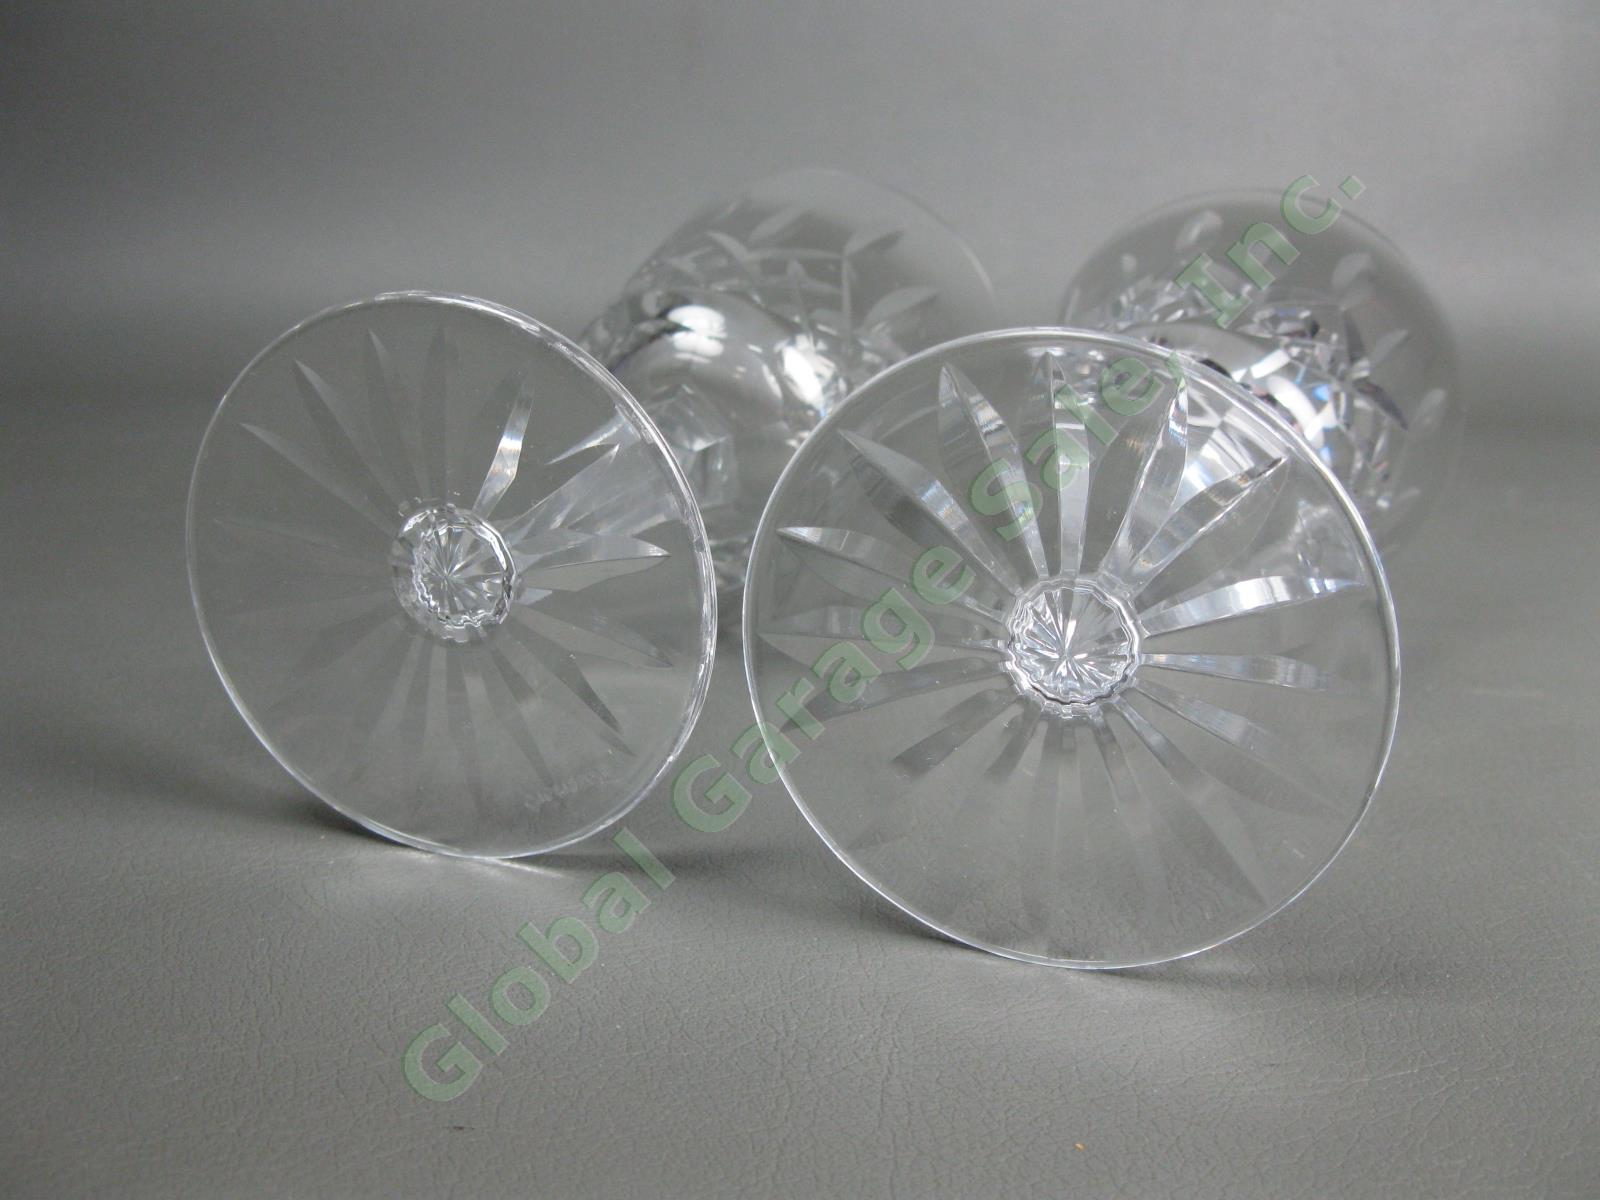 2 Original VTG Waterford Crystal Lismore Claret Wine 5-7/8" Goblet Cut Glass Set 1